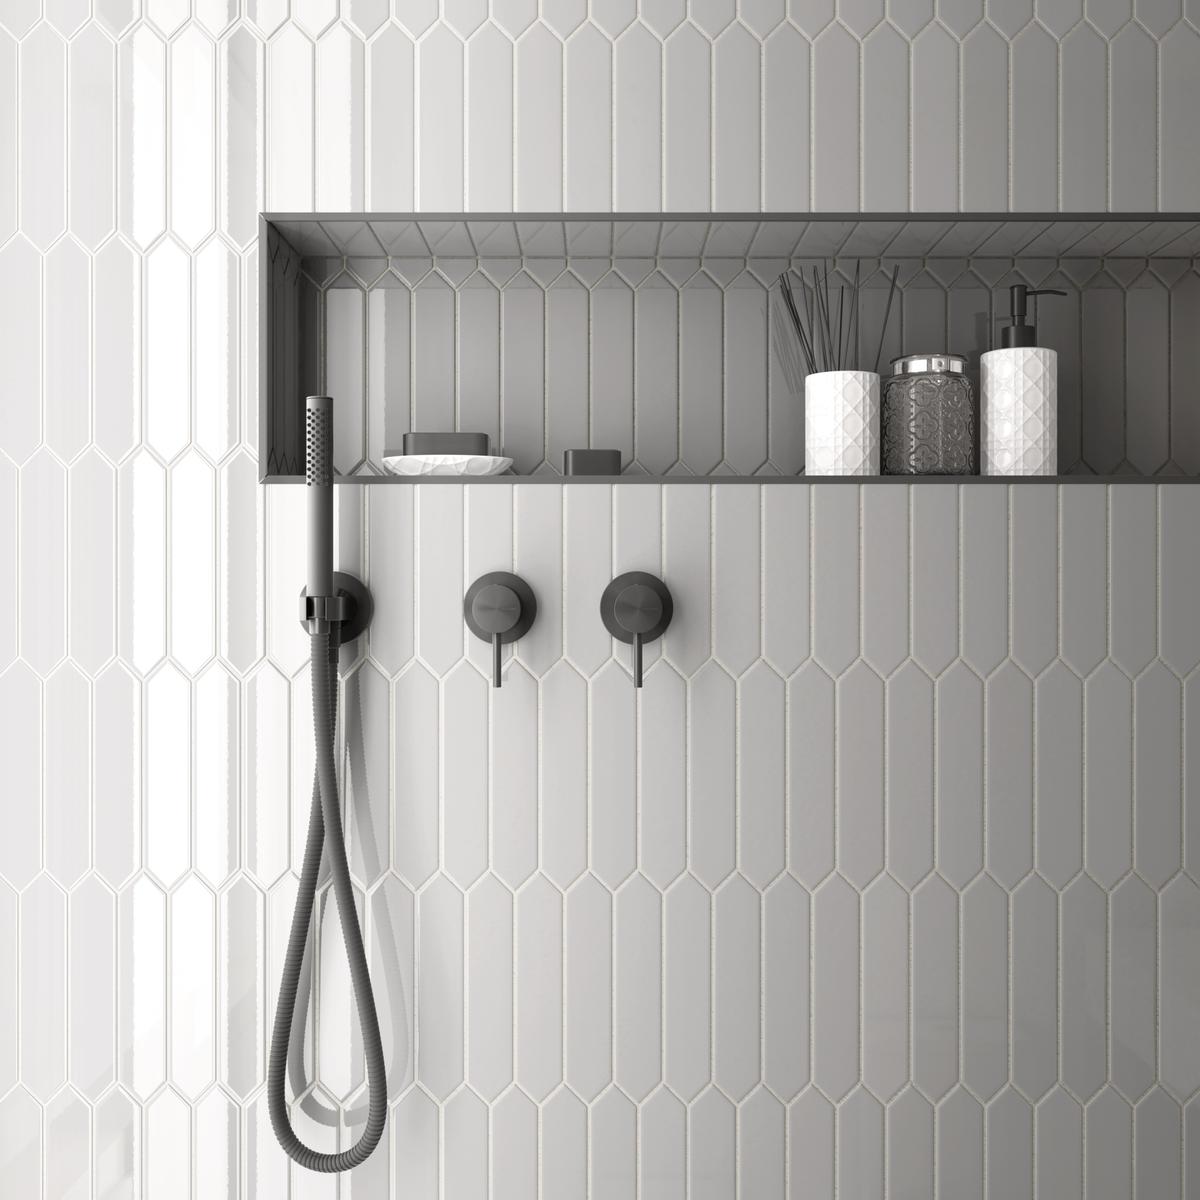 Carrelage uni blanc dans une salle de bain moderne avec robinetterie et accessoires noirs sur étagère encastrée